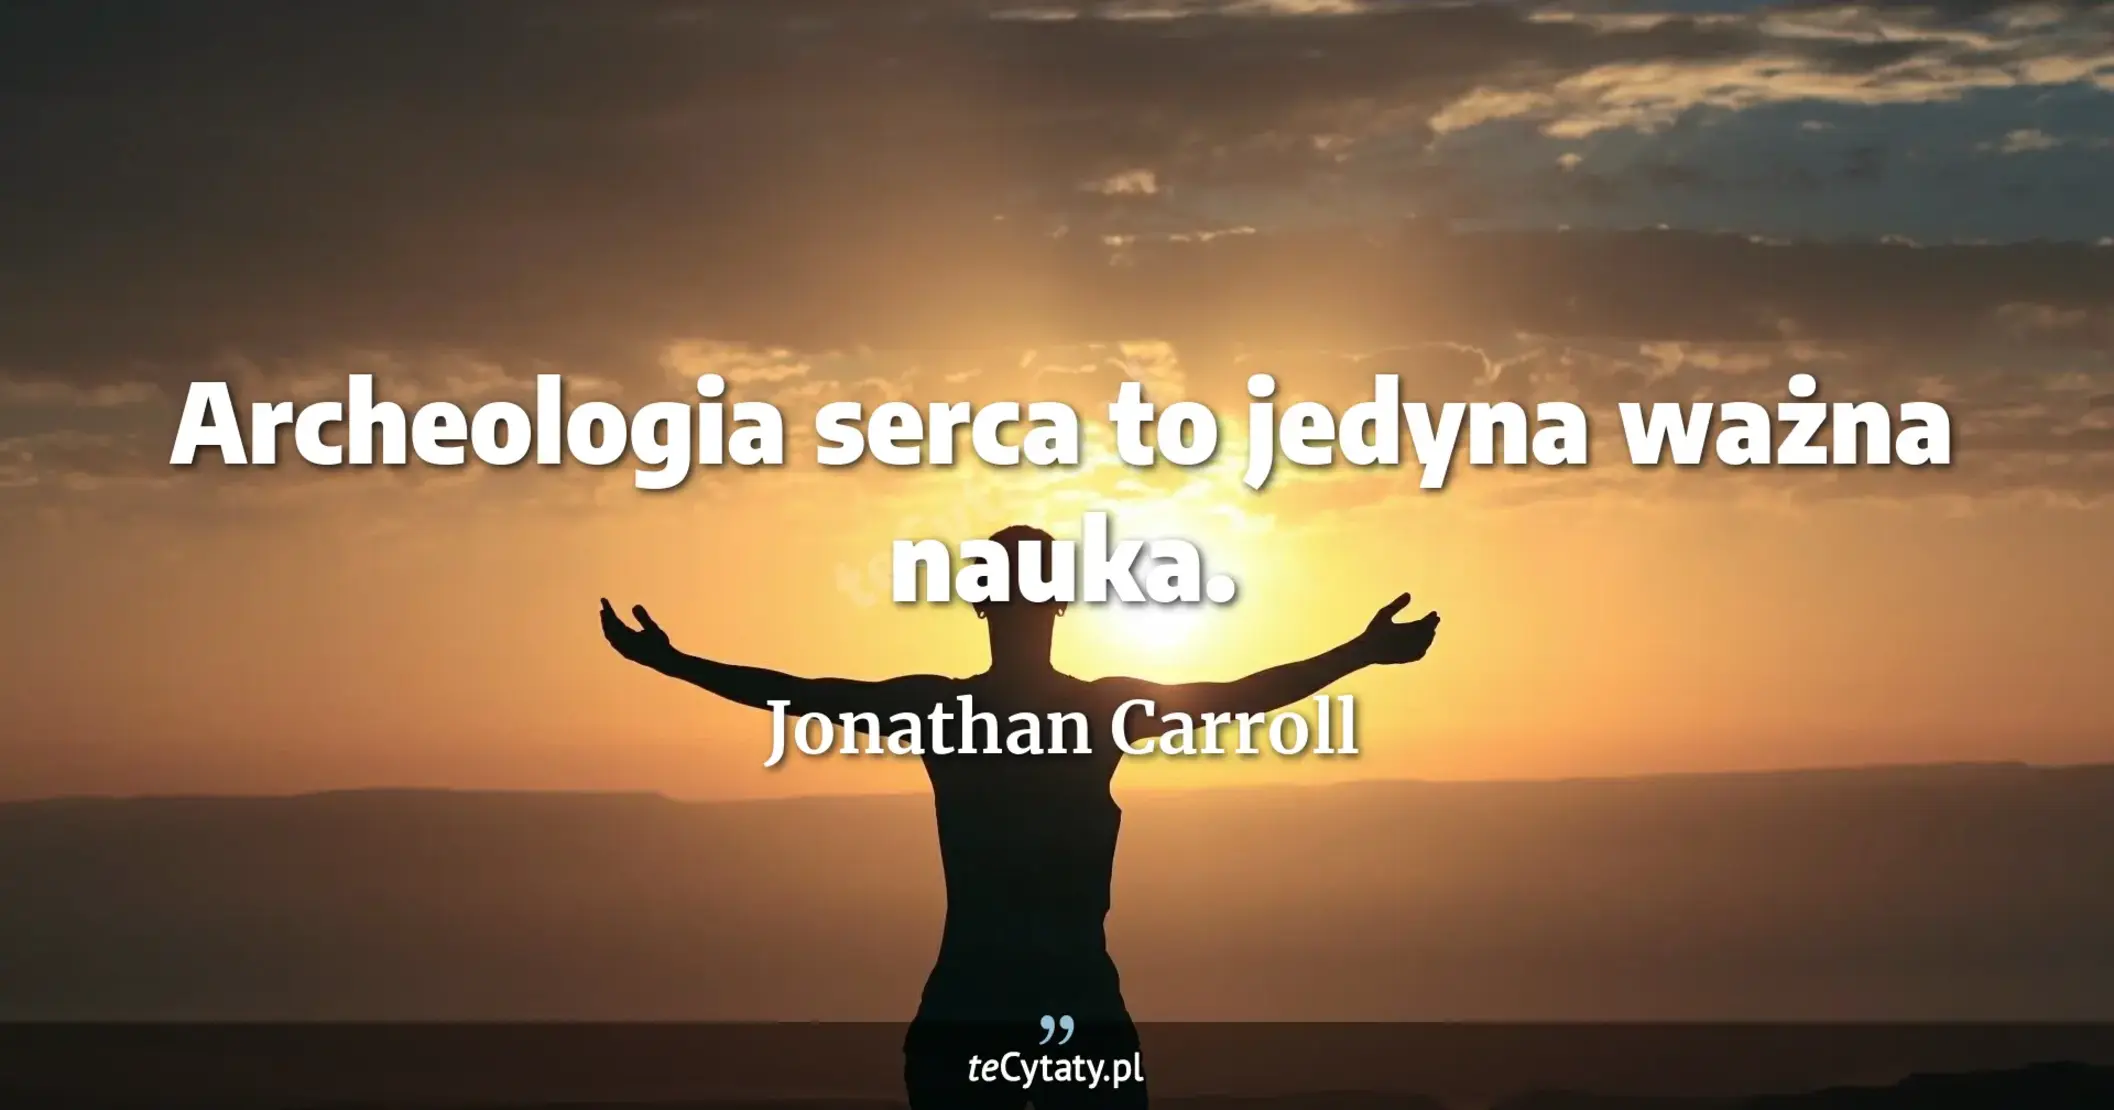 Archeologia serca to jedyna ważna nauka. - Jonathan Carroll